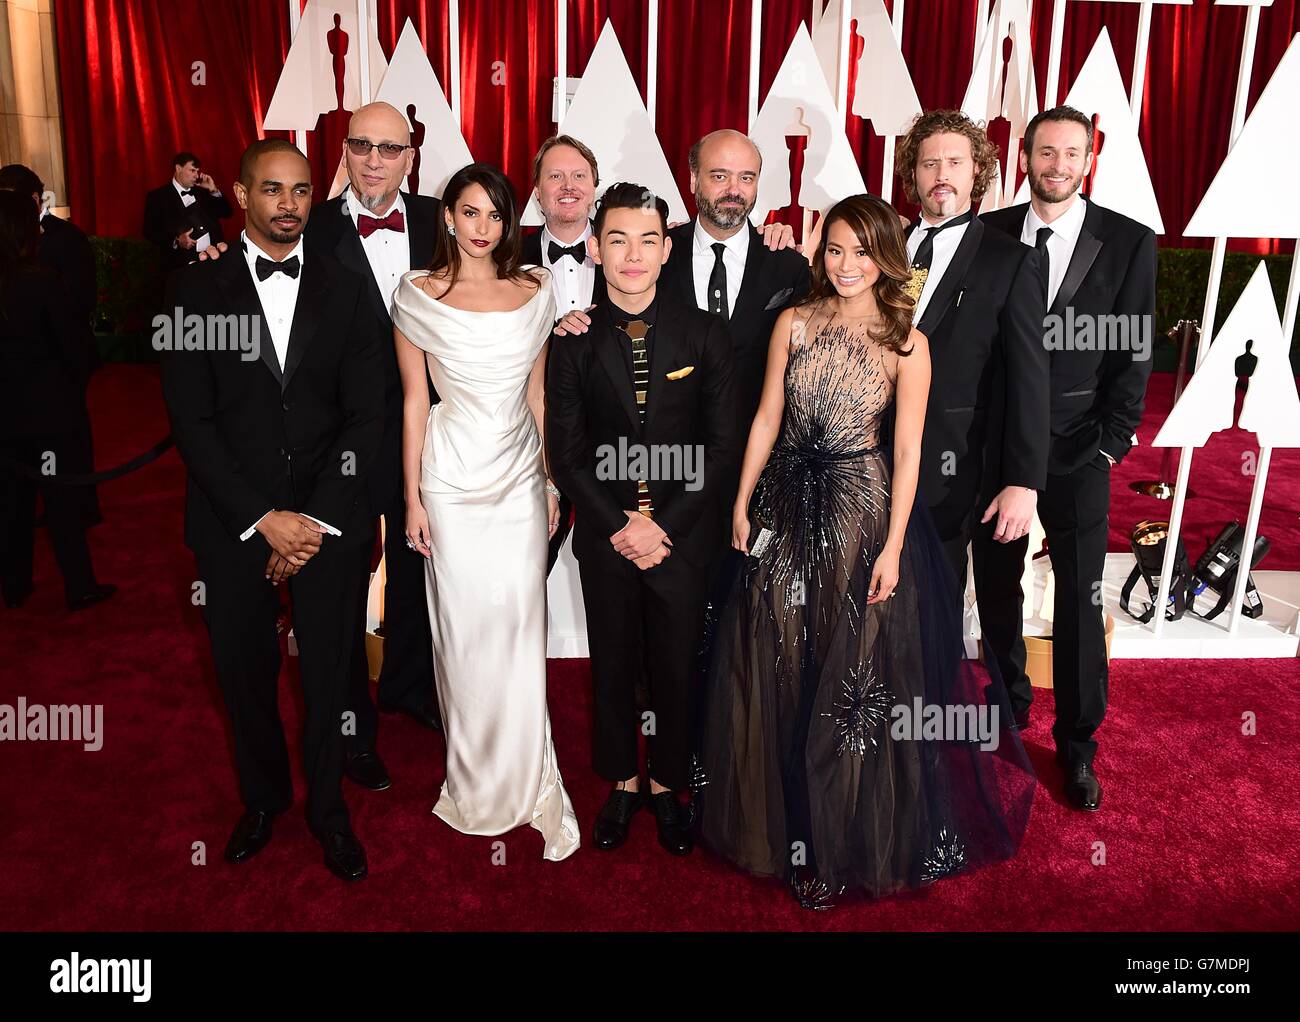 Jamie Chung, Genesis Rodriguez avec les producteurs et directeurs de Big Hero 6 arrivant aux 87e Academy Awards qui se tiennent au Dolby Theatre à Hollywood, Los Angeles, CA, Etats-Unis, le 22 février,2015. Banque D'Images